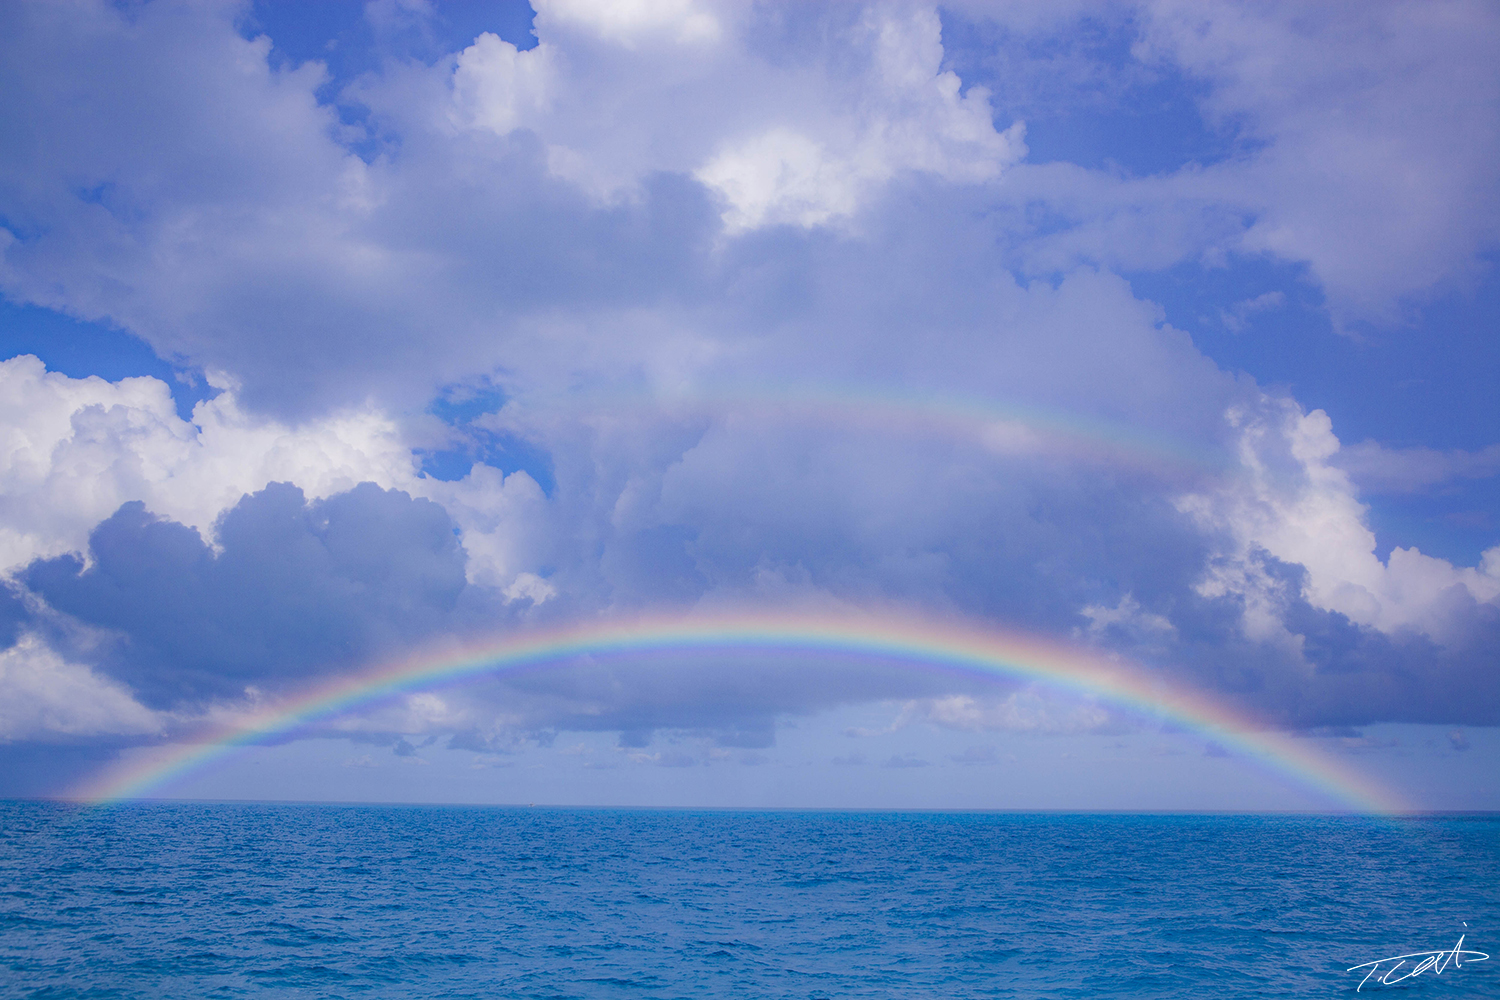 Rainbow on the blue ocean.